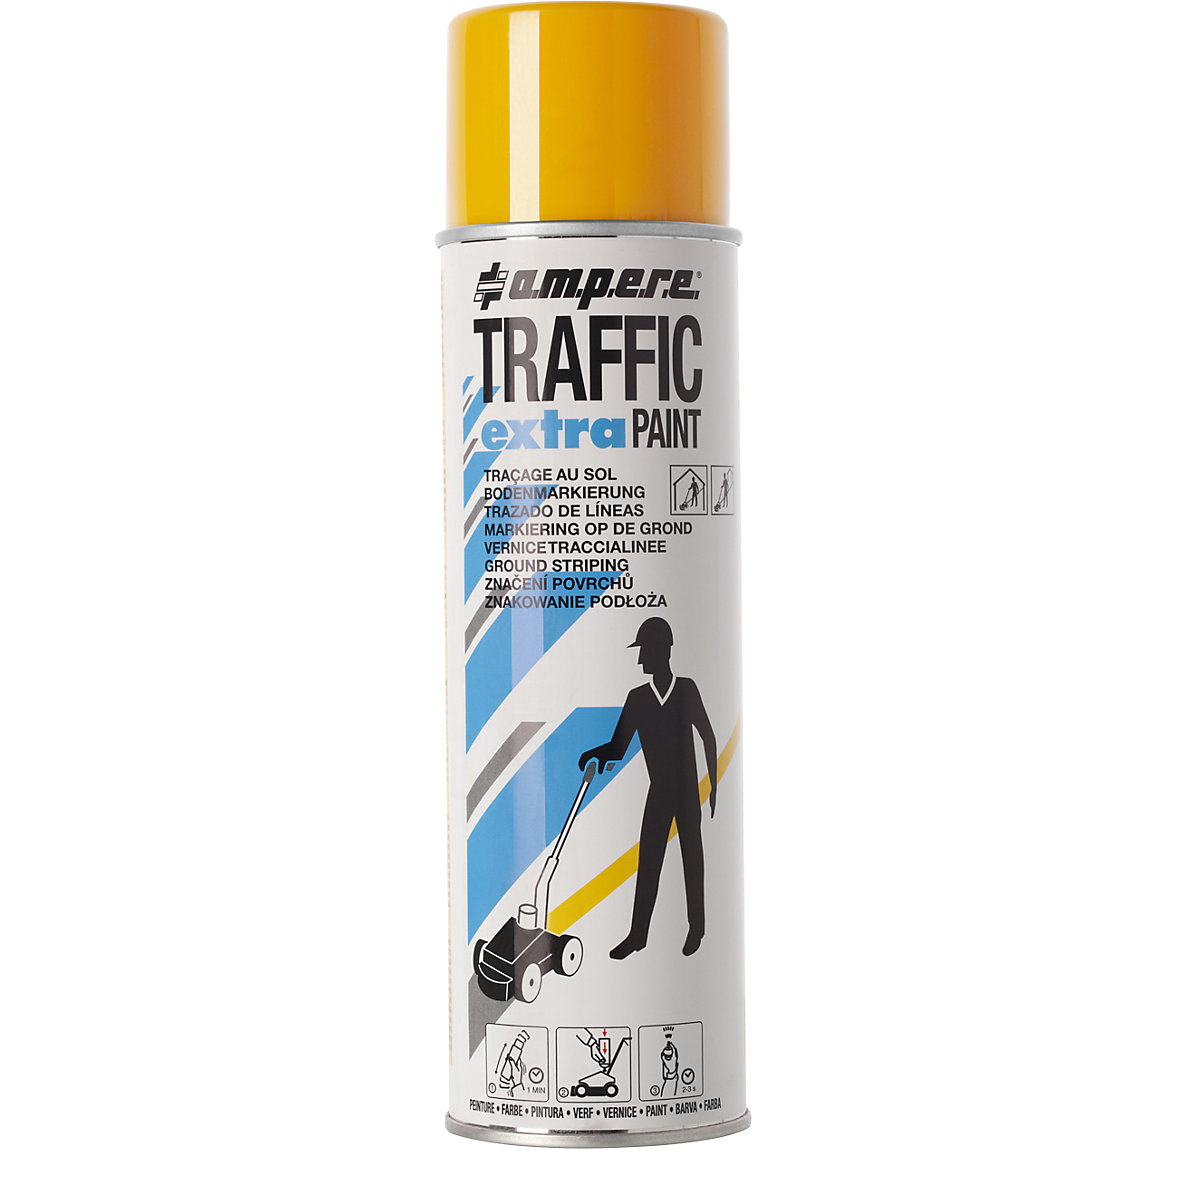 Boja za označavanje Traffic extra Paint® za velika opterećenja – Ampere